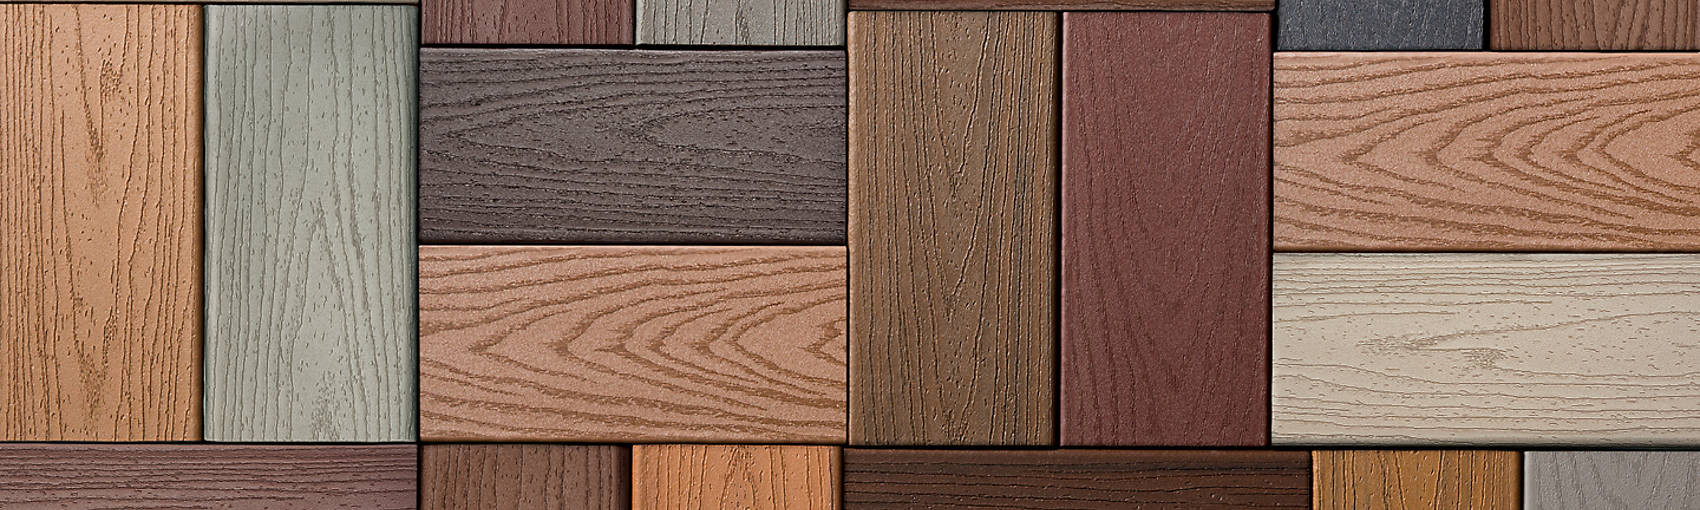 hardwood floor refinishing haddonfield nj of composite decking composite deck materials trex in trex color selector hero 2